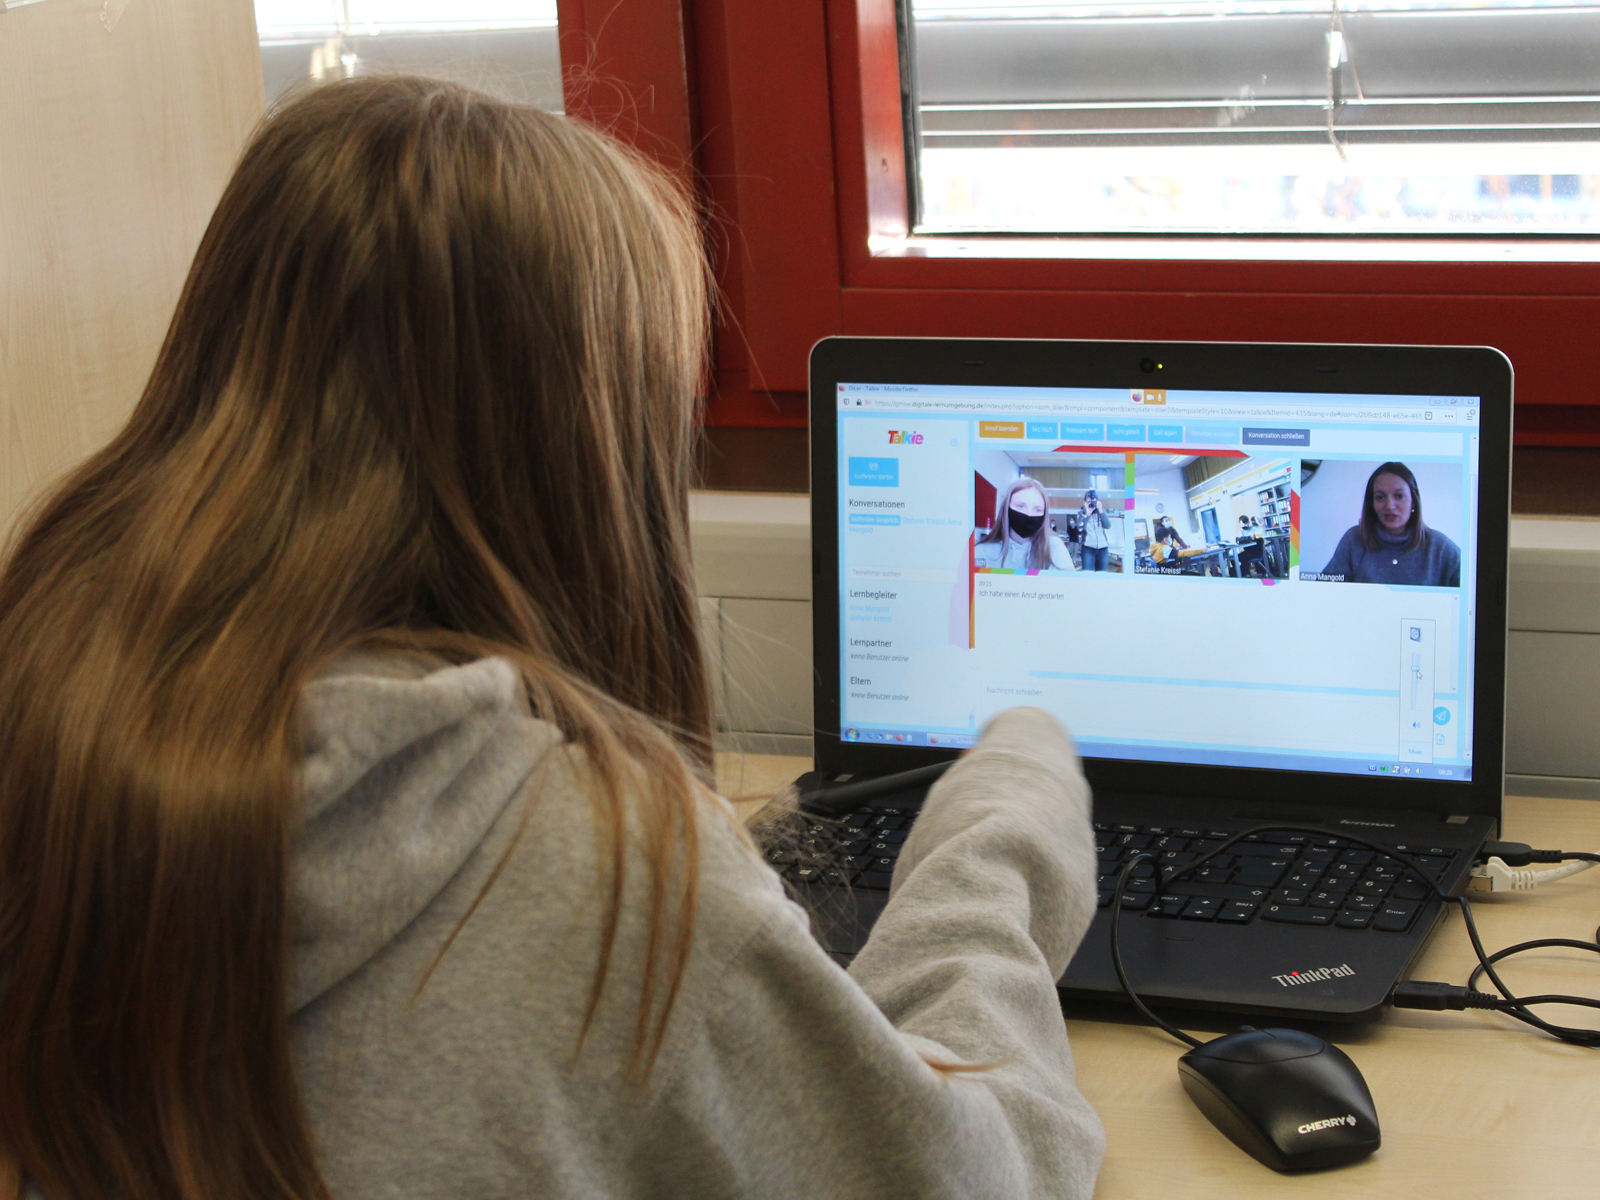  Digitaler Unterricht an der GMS - von zuhause können sich die Schüler auf die Plattform der Schule einloggen 